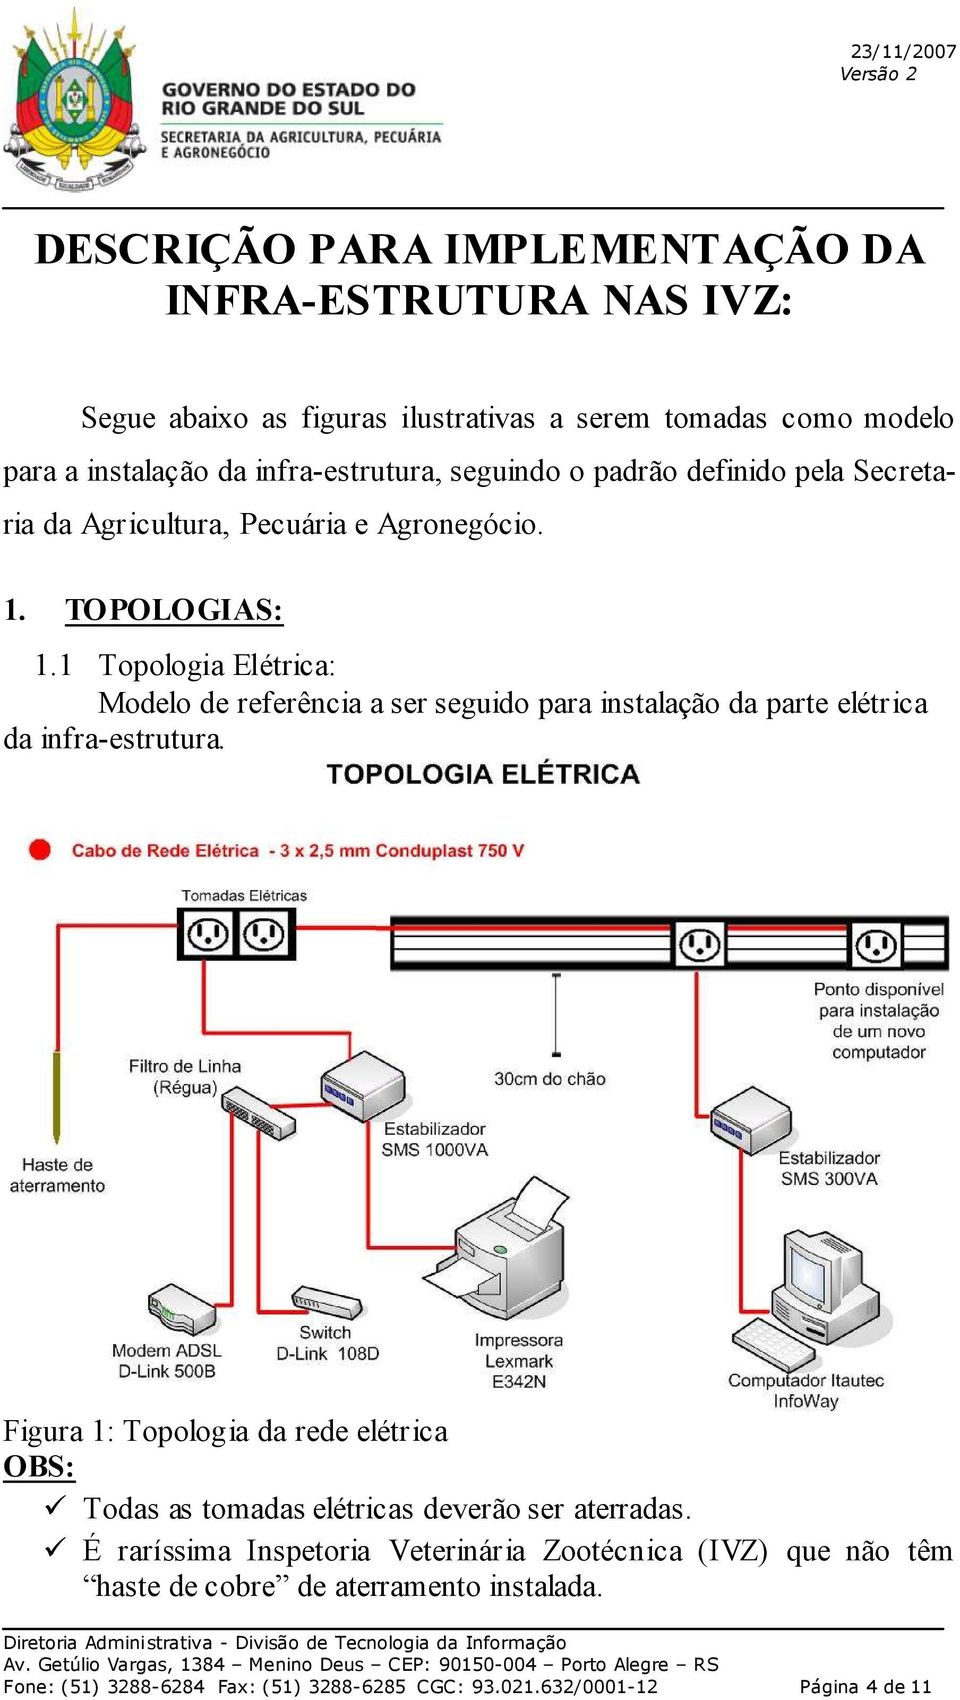 1 Topologia Elétrica: Modelo de referência a ser seguido para instalação da parte elétrica da infra-estrutura.